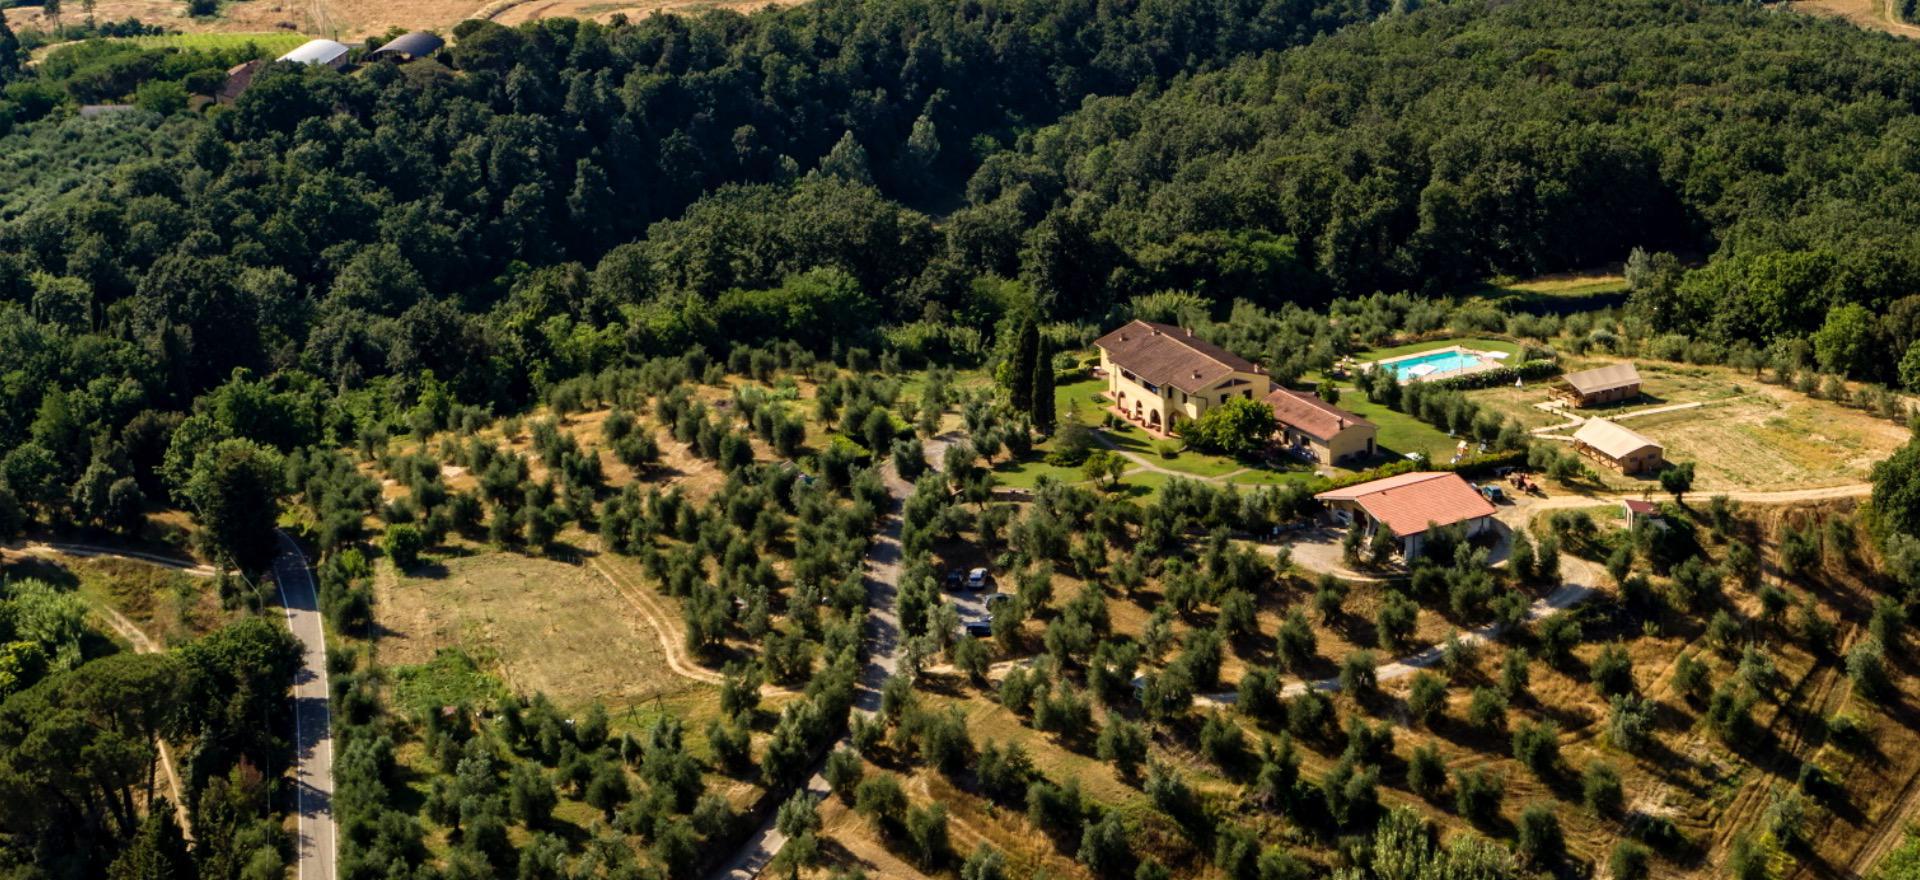 Agriturismo Toscane, gemoedelijk tussen de wijngaarden